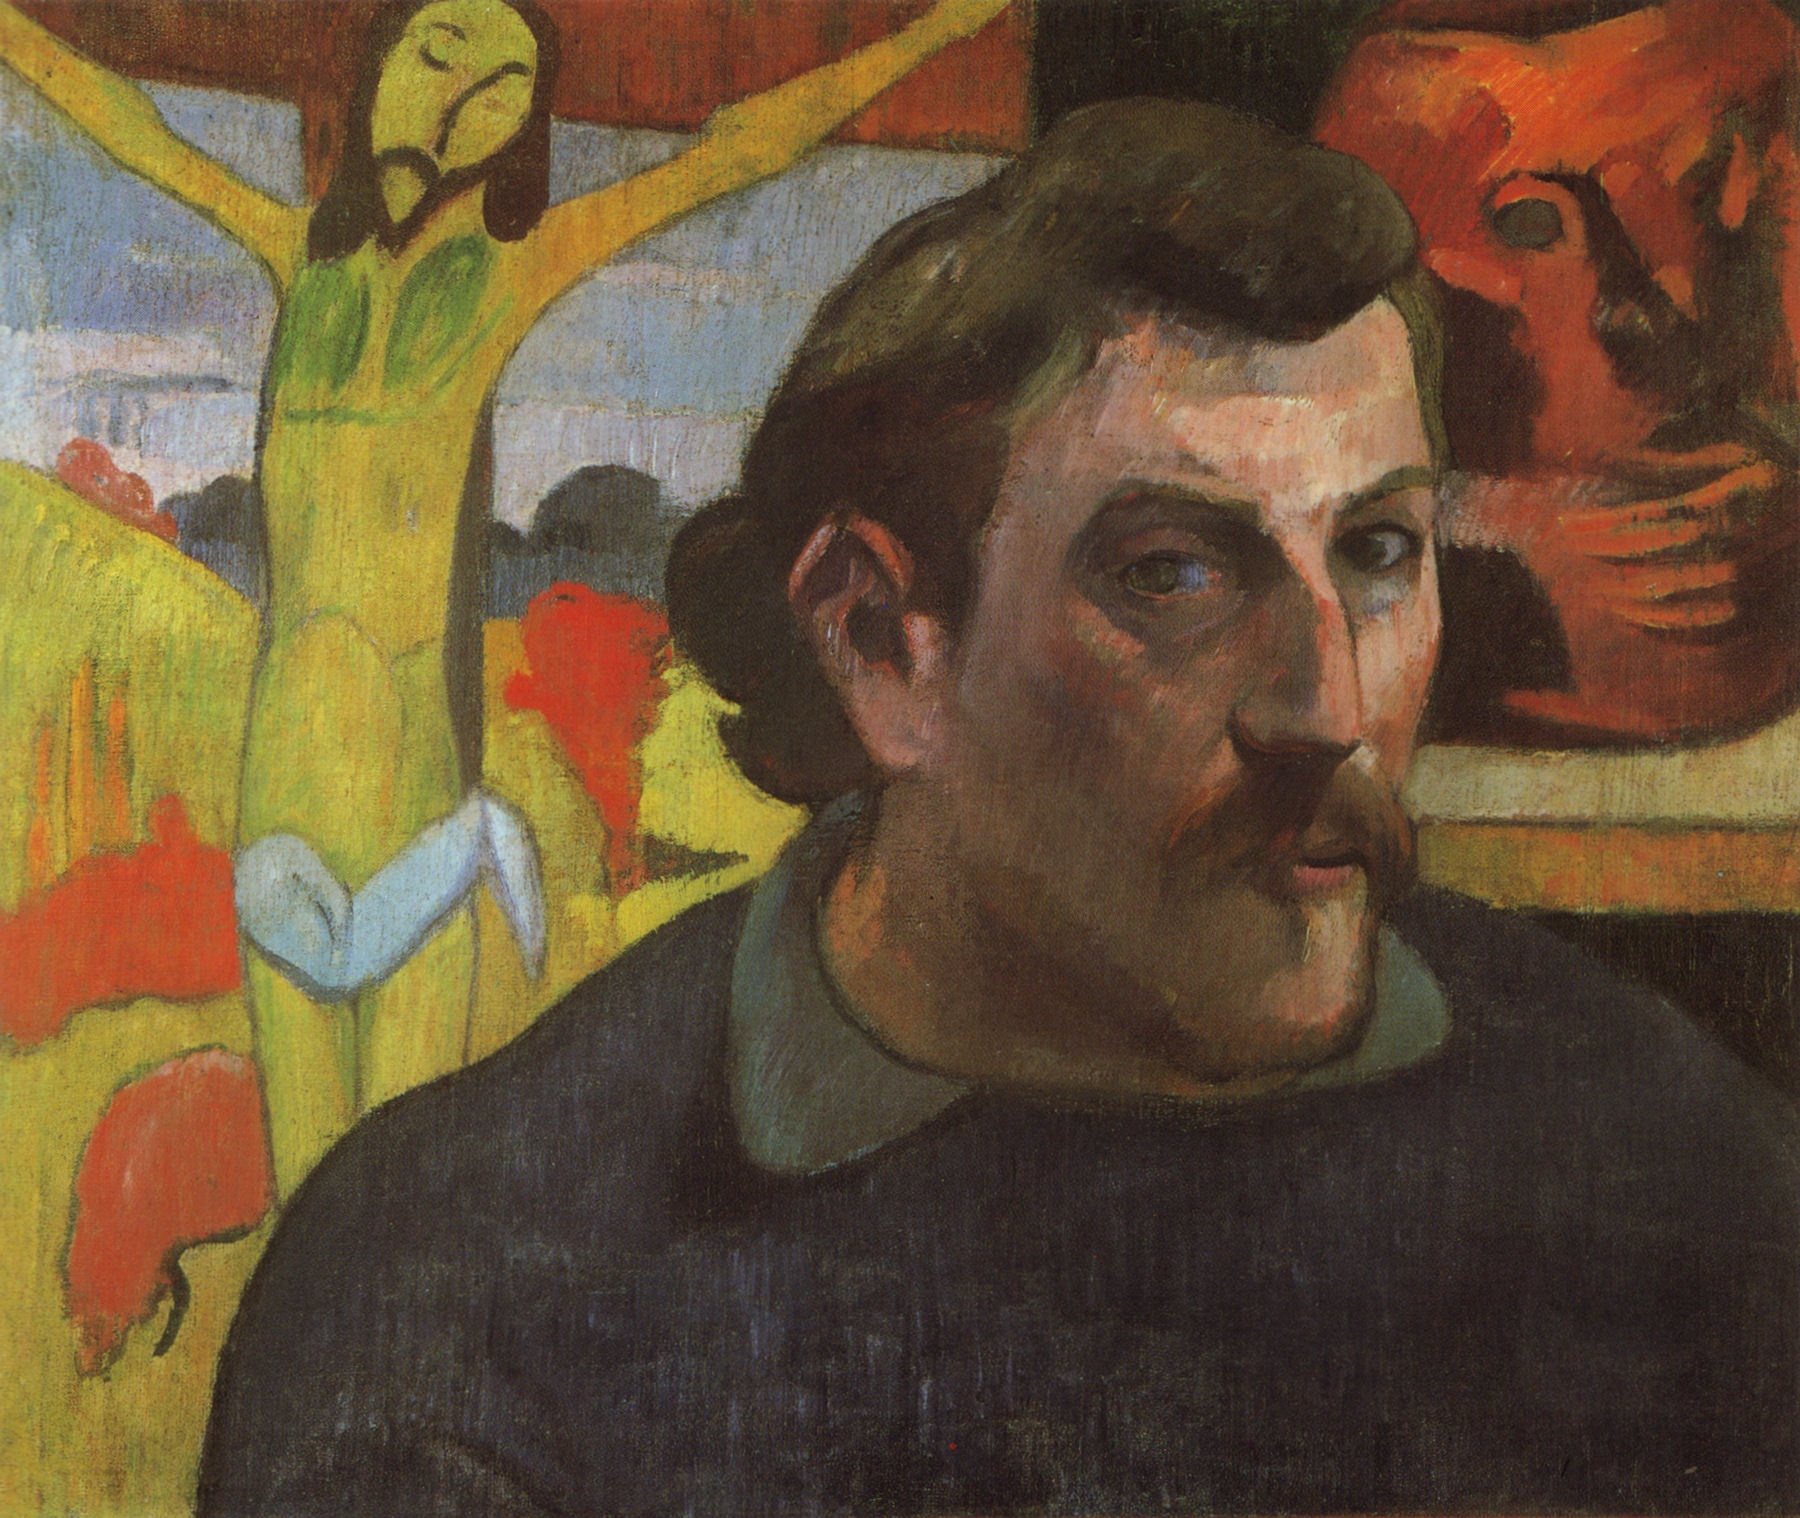 Paul Gauguin - June 7, 1848 - May 8, 1903